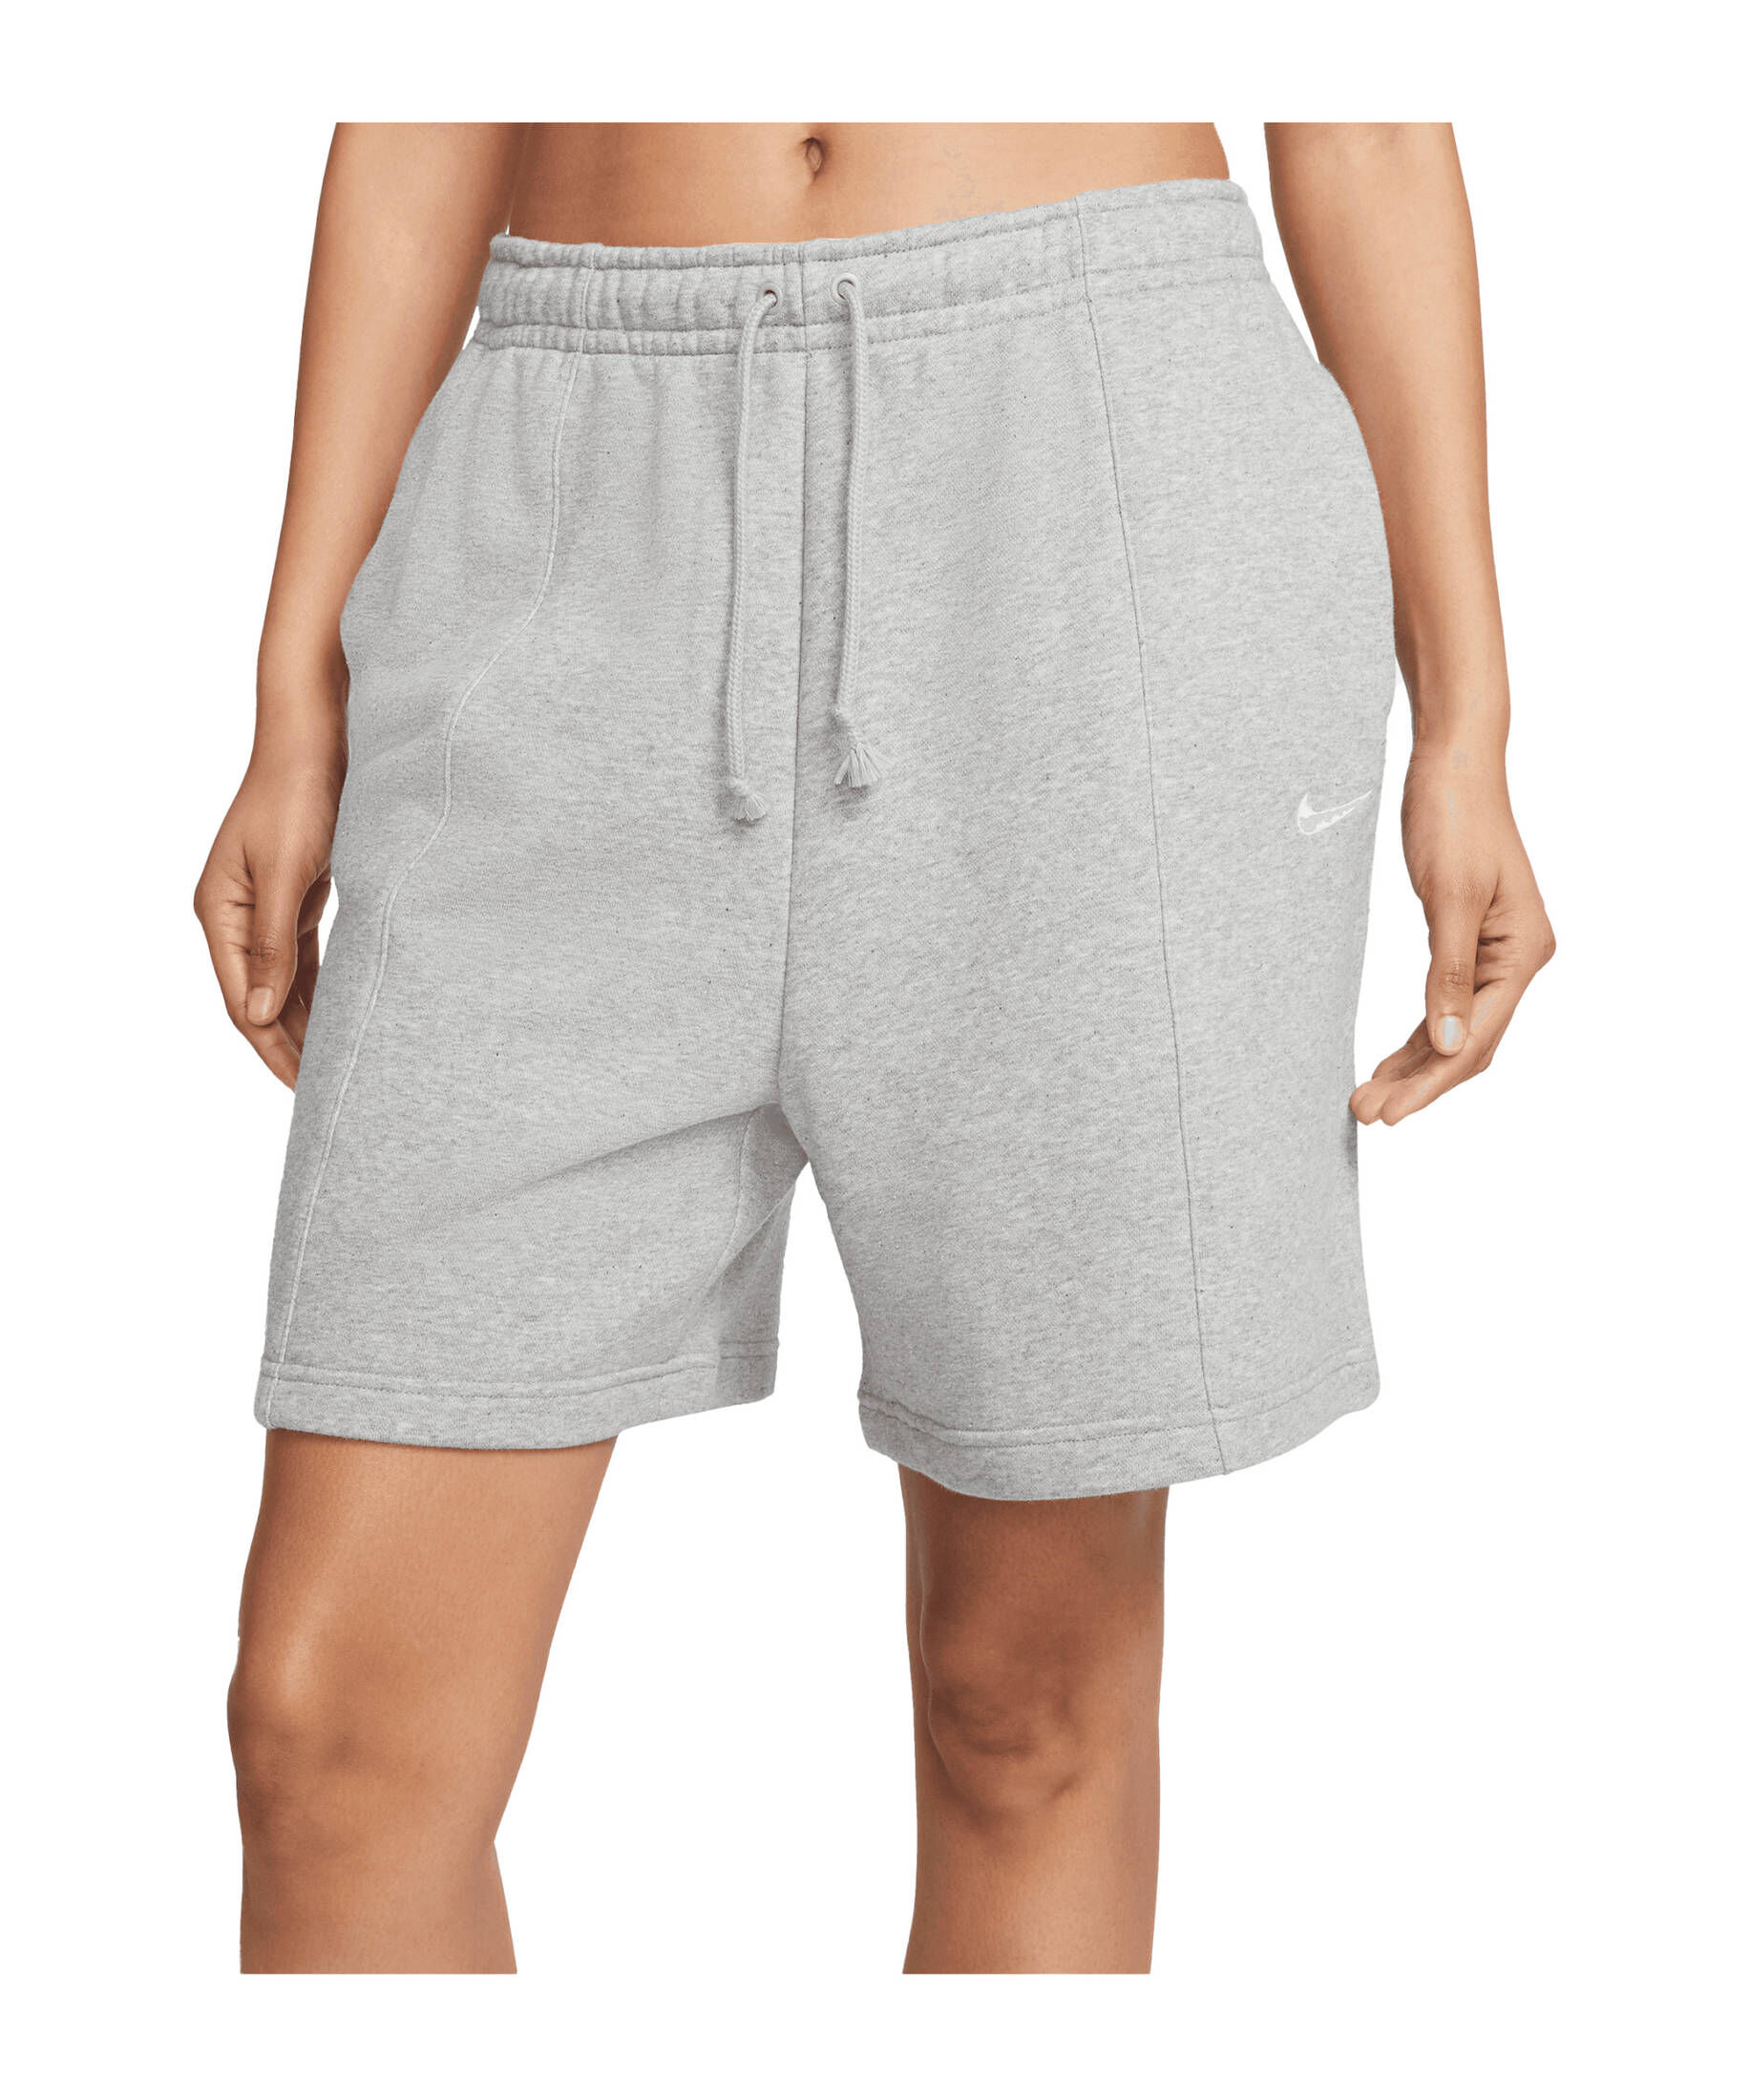 Nike| Damen Lifestyle - Textilien - Hosen kurz Essential High Waist Short Damen CB11035